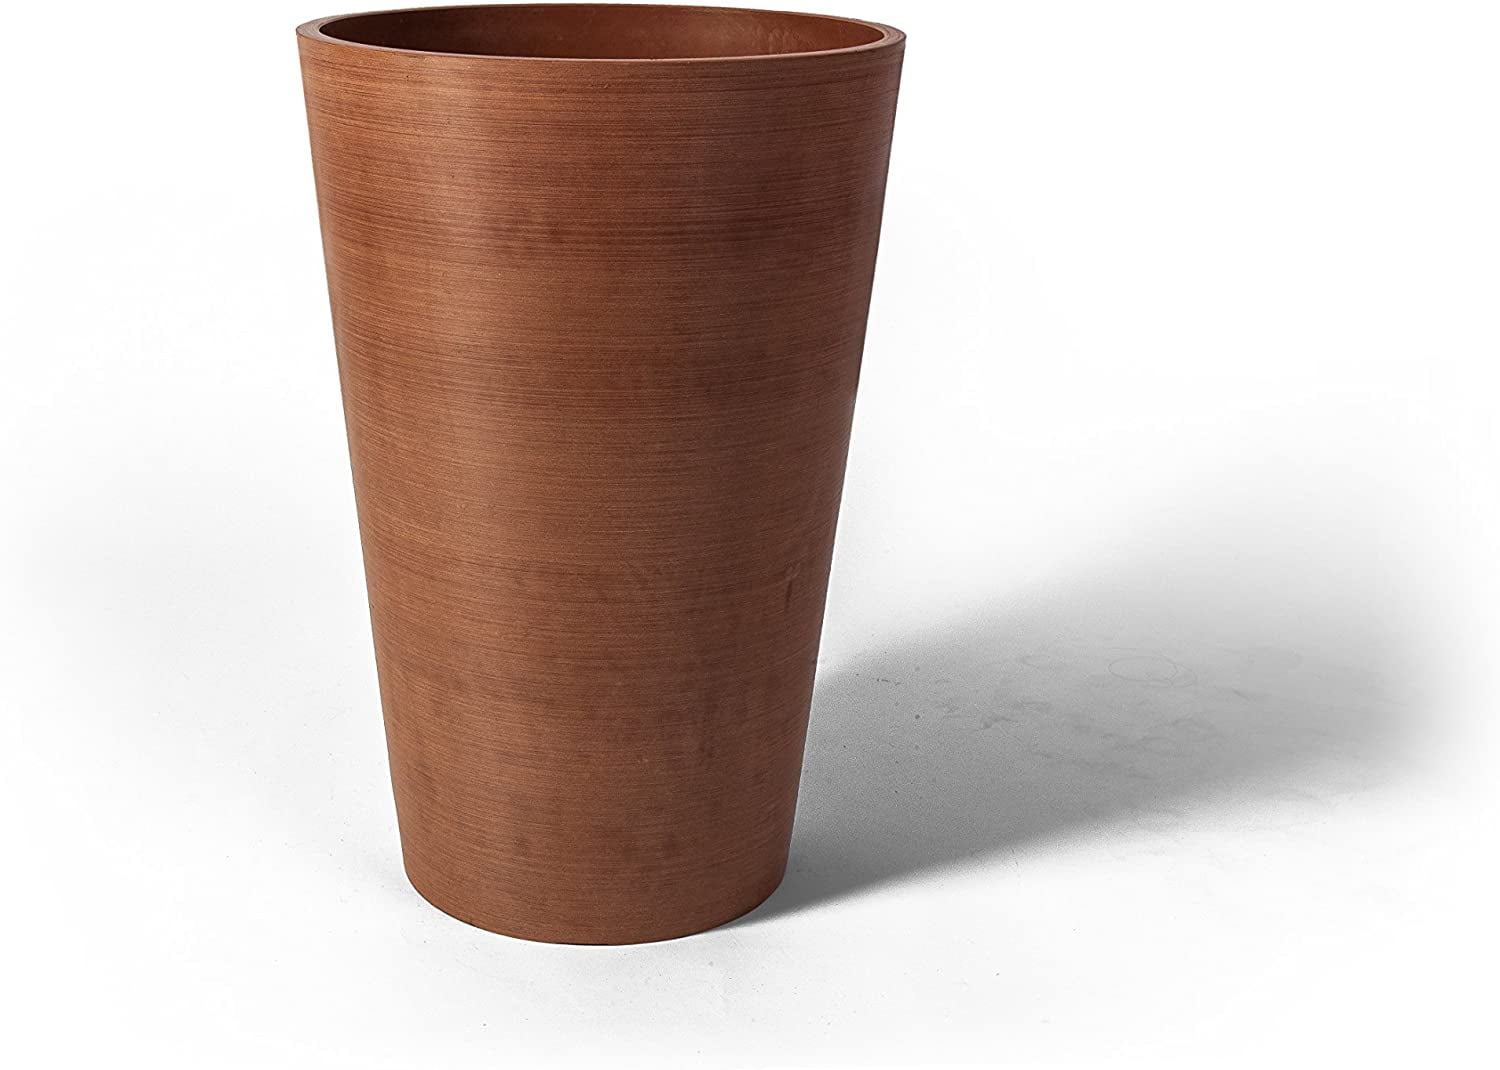 免税 Algreen Valencia Round Planter Pot， 12.25 by 18-Inch， Textured Charcoal  園芸用品